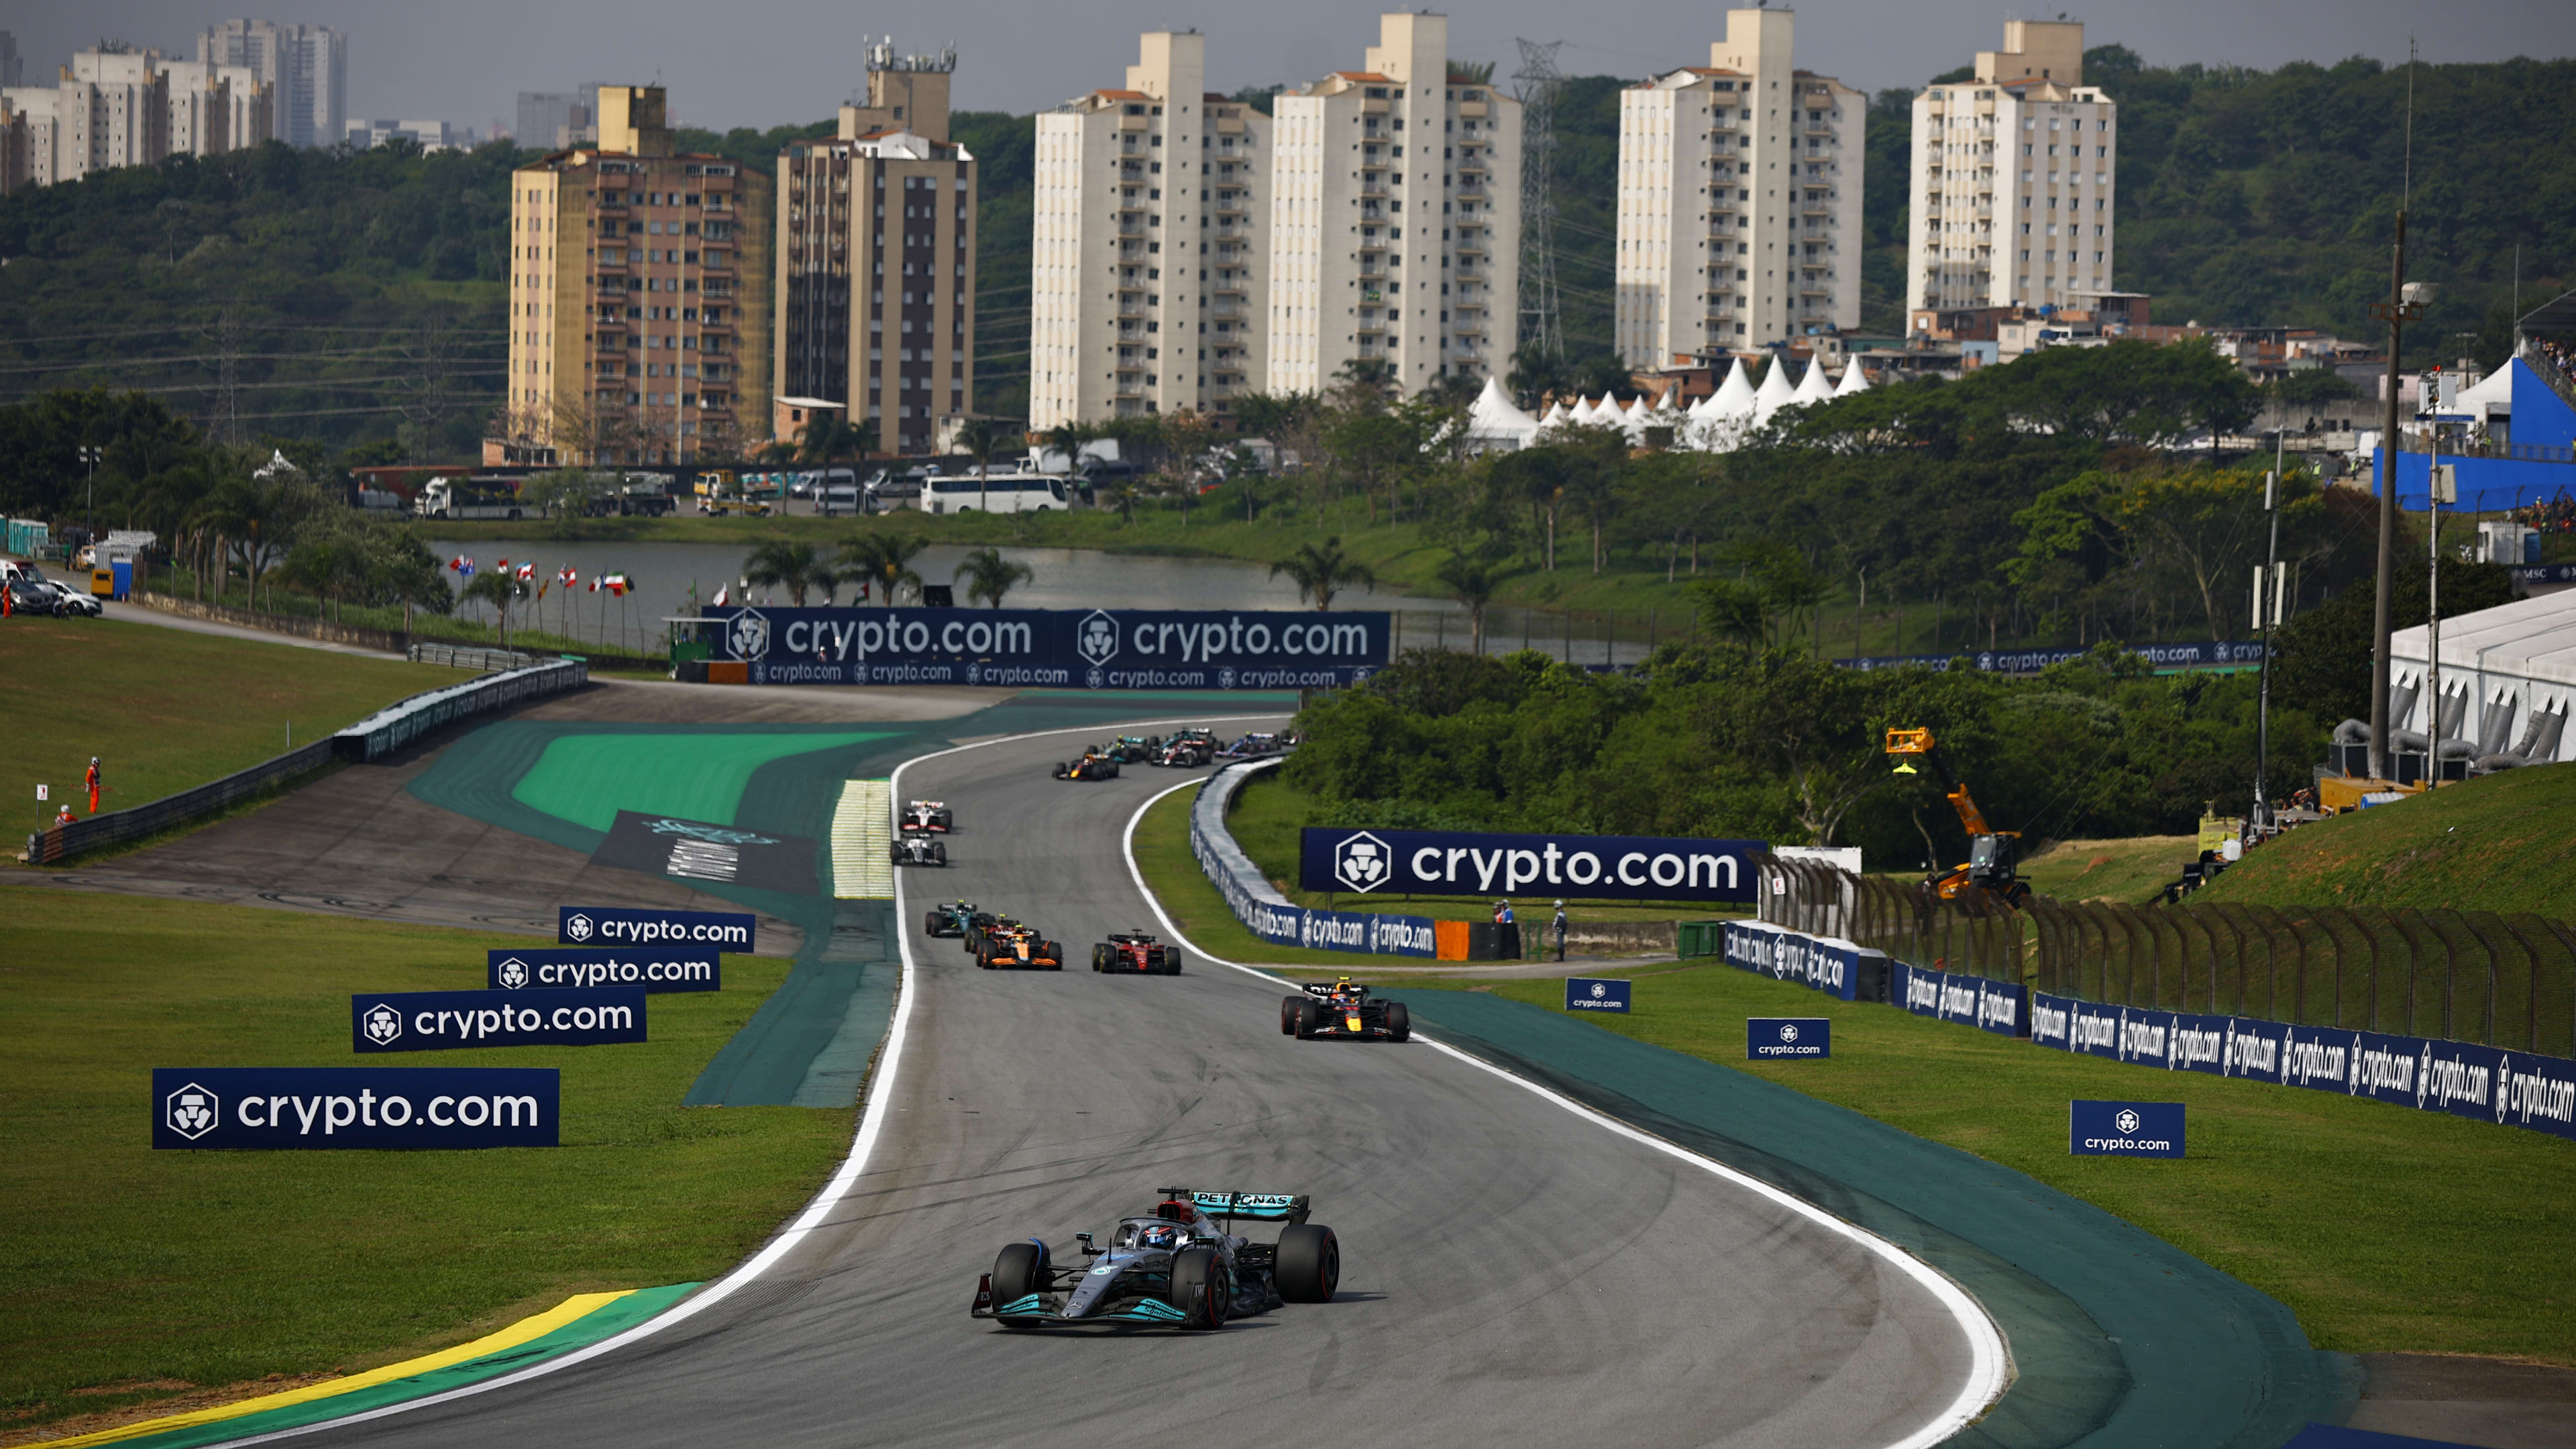 Technical upgrades: Sao Paulo Grand Prix